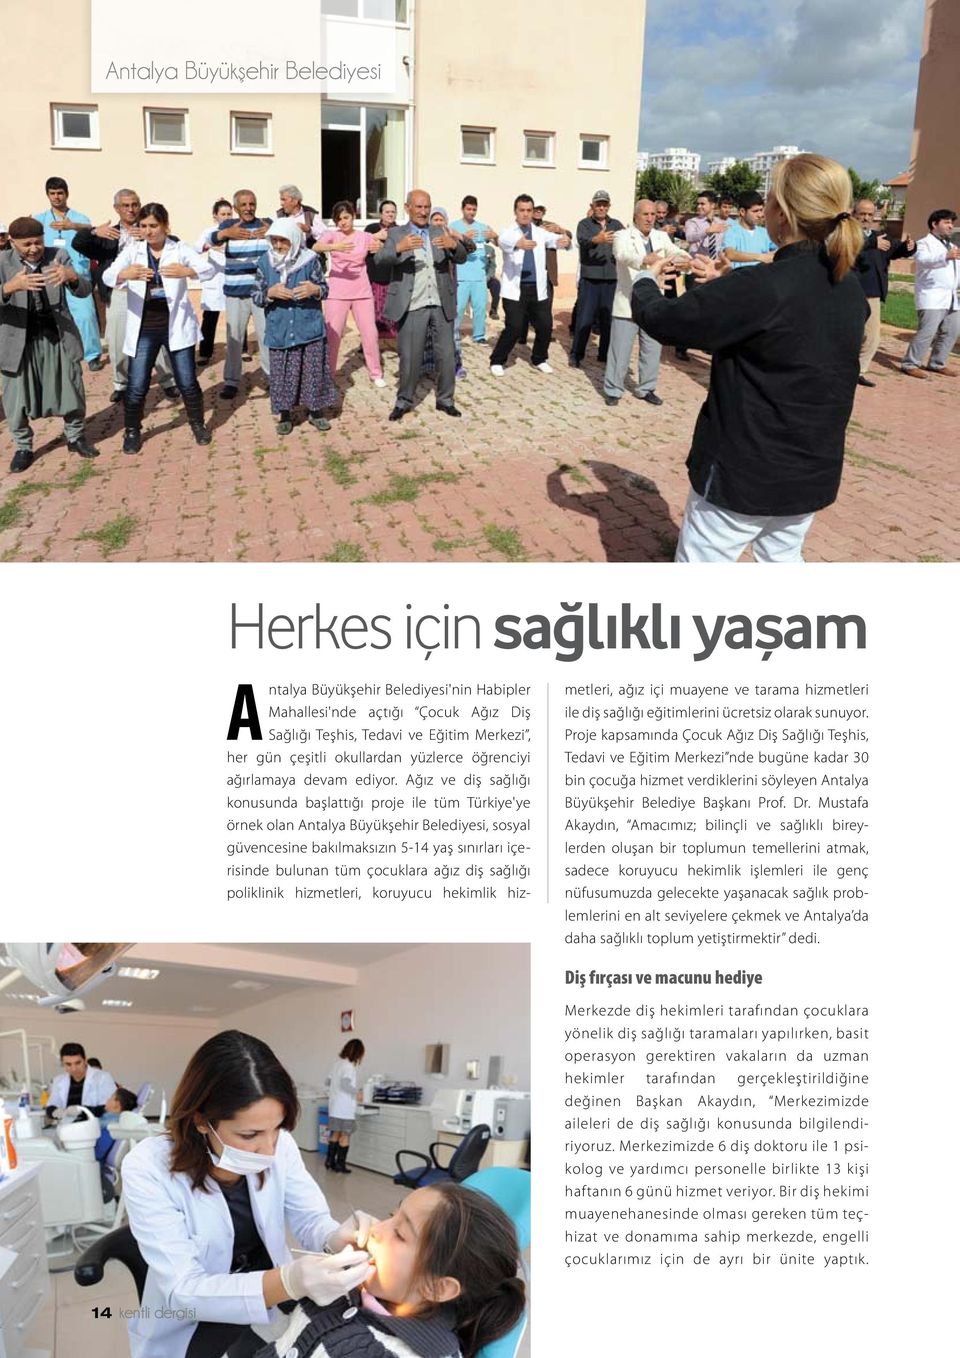 Ağız ve diş sağlığı konusunda başlattığı proje ile tüm Türkiye'ye örnek olan Antalya Büyükşehir Belediyesi, sosyal güvencesine bakılmaksızın 5-14 yaş sınırları içerisinde bulunan tüm çocuklara ağız